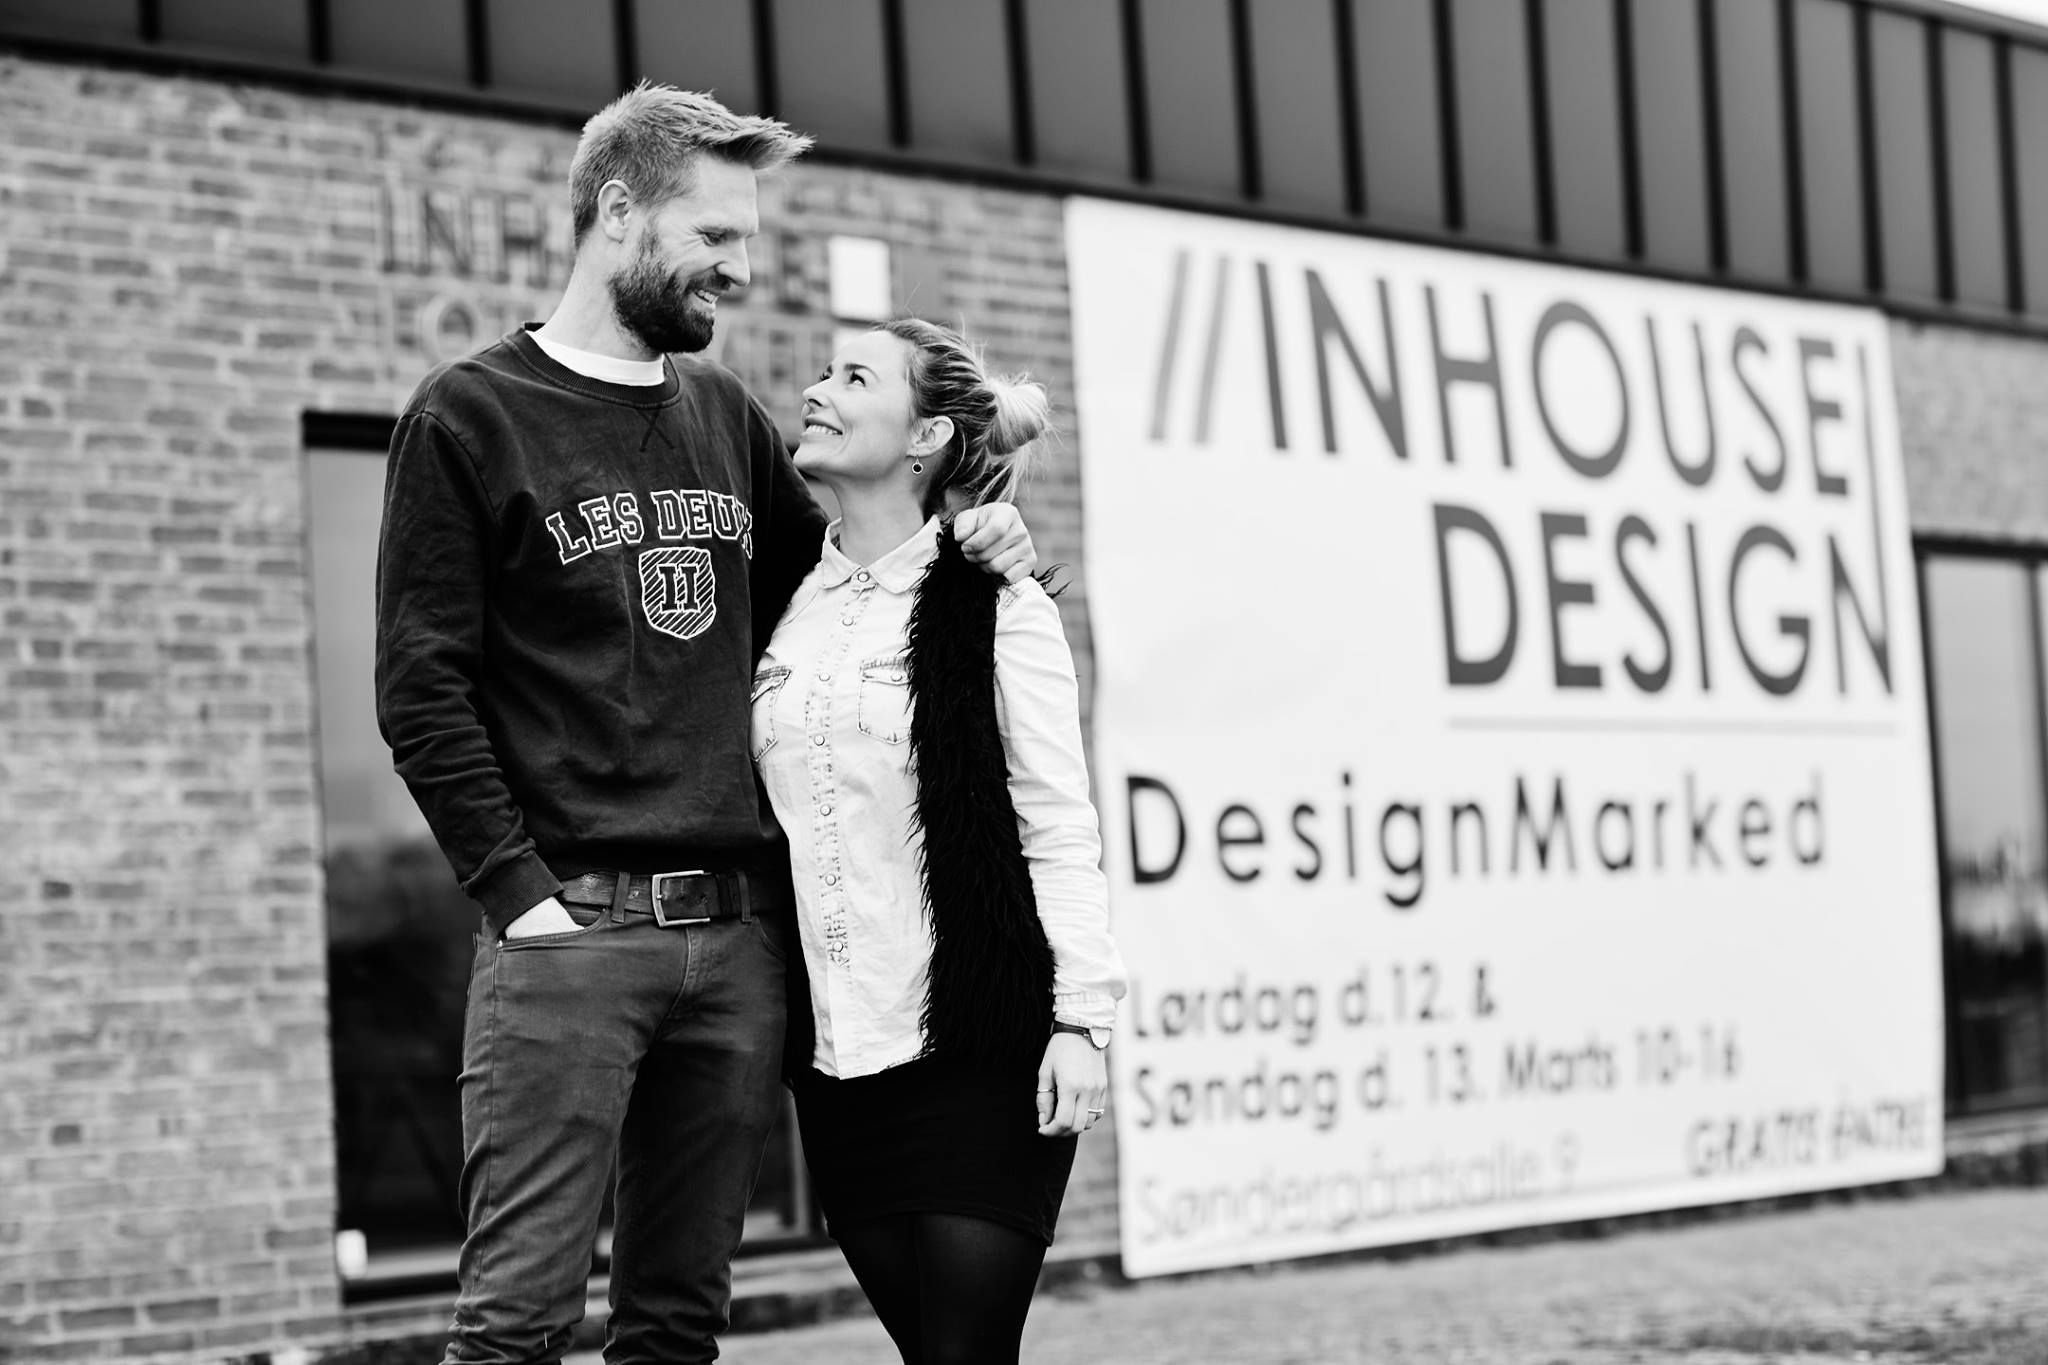 Nyt designmarked i Horsens - Denne weekend!